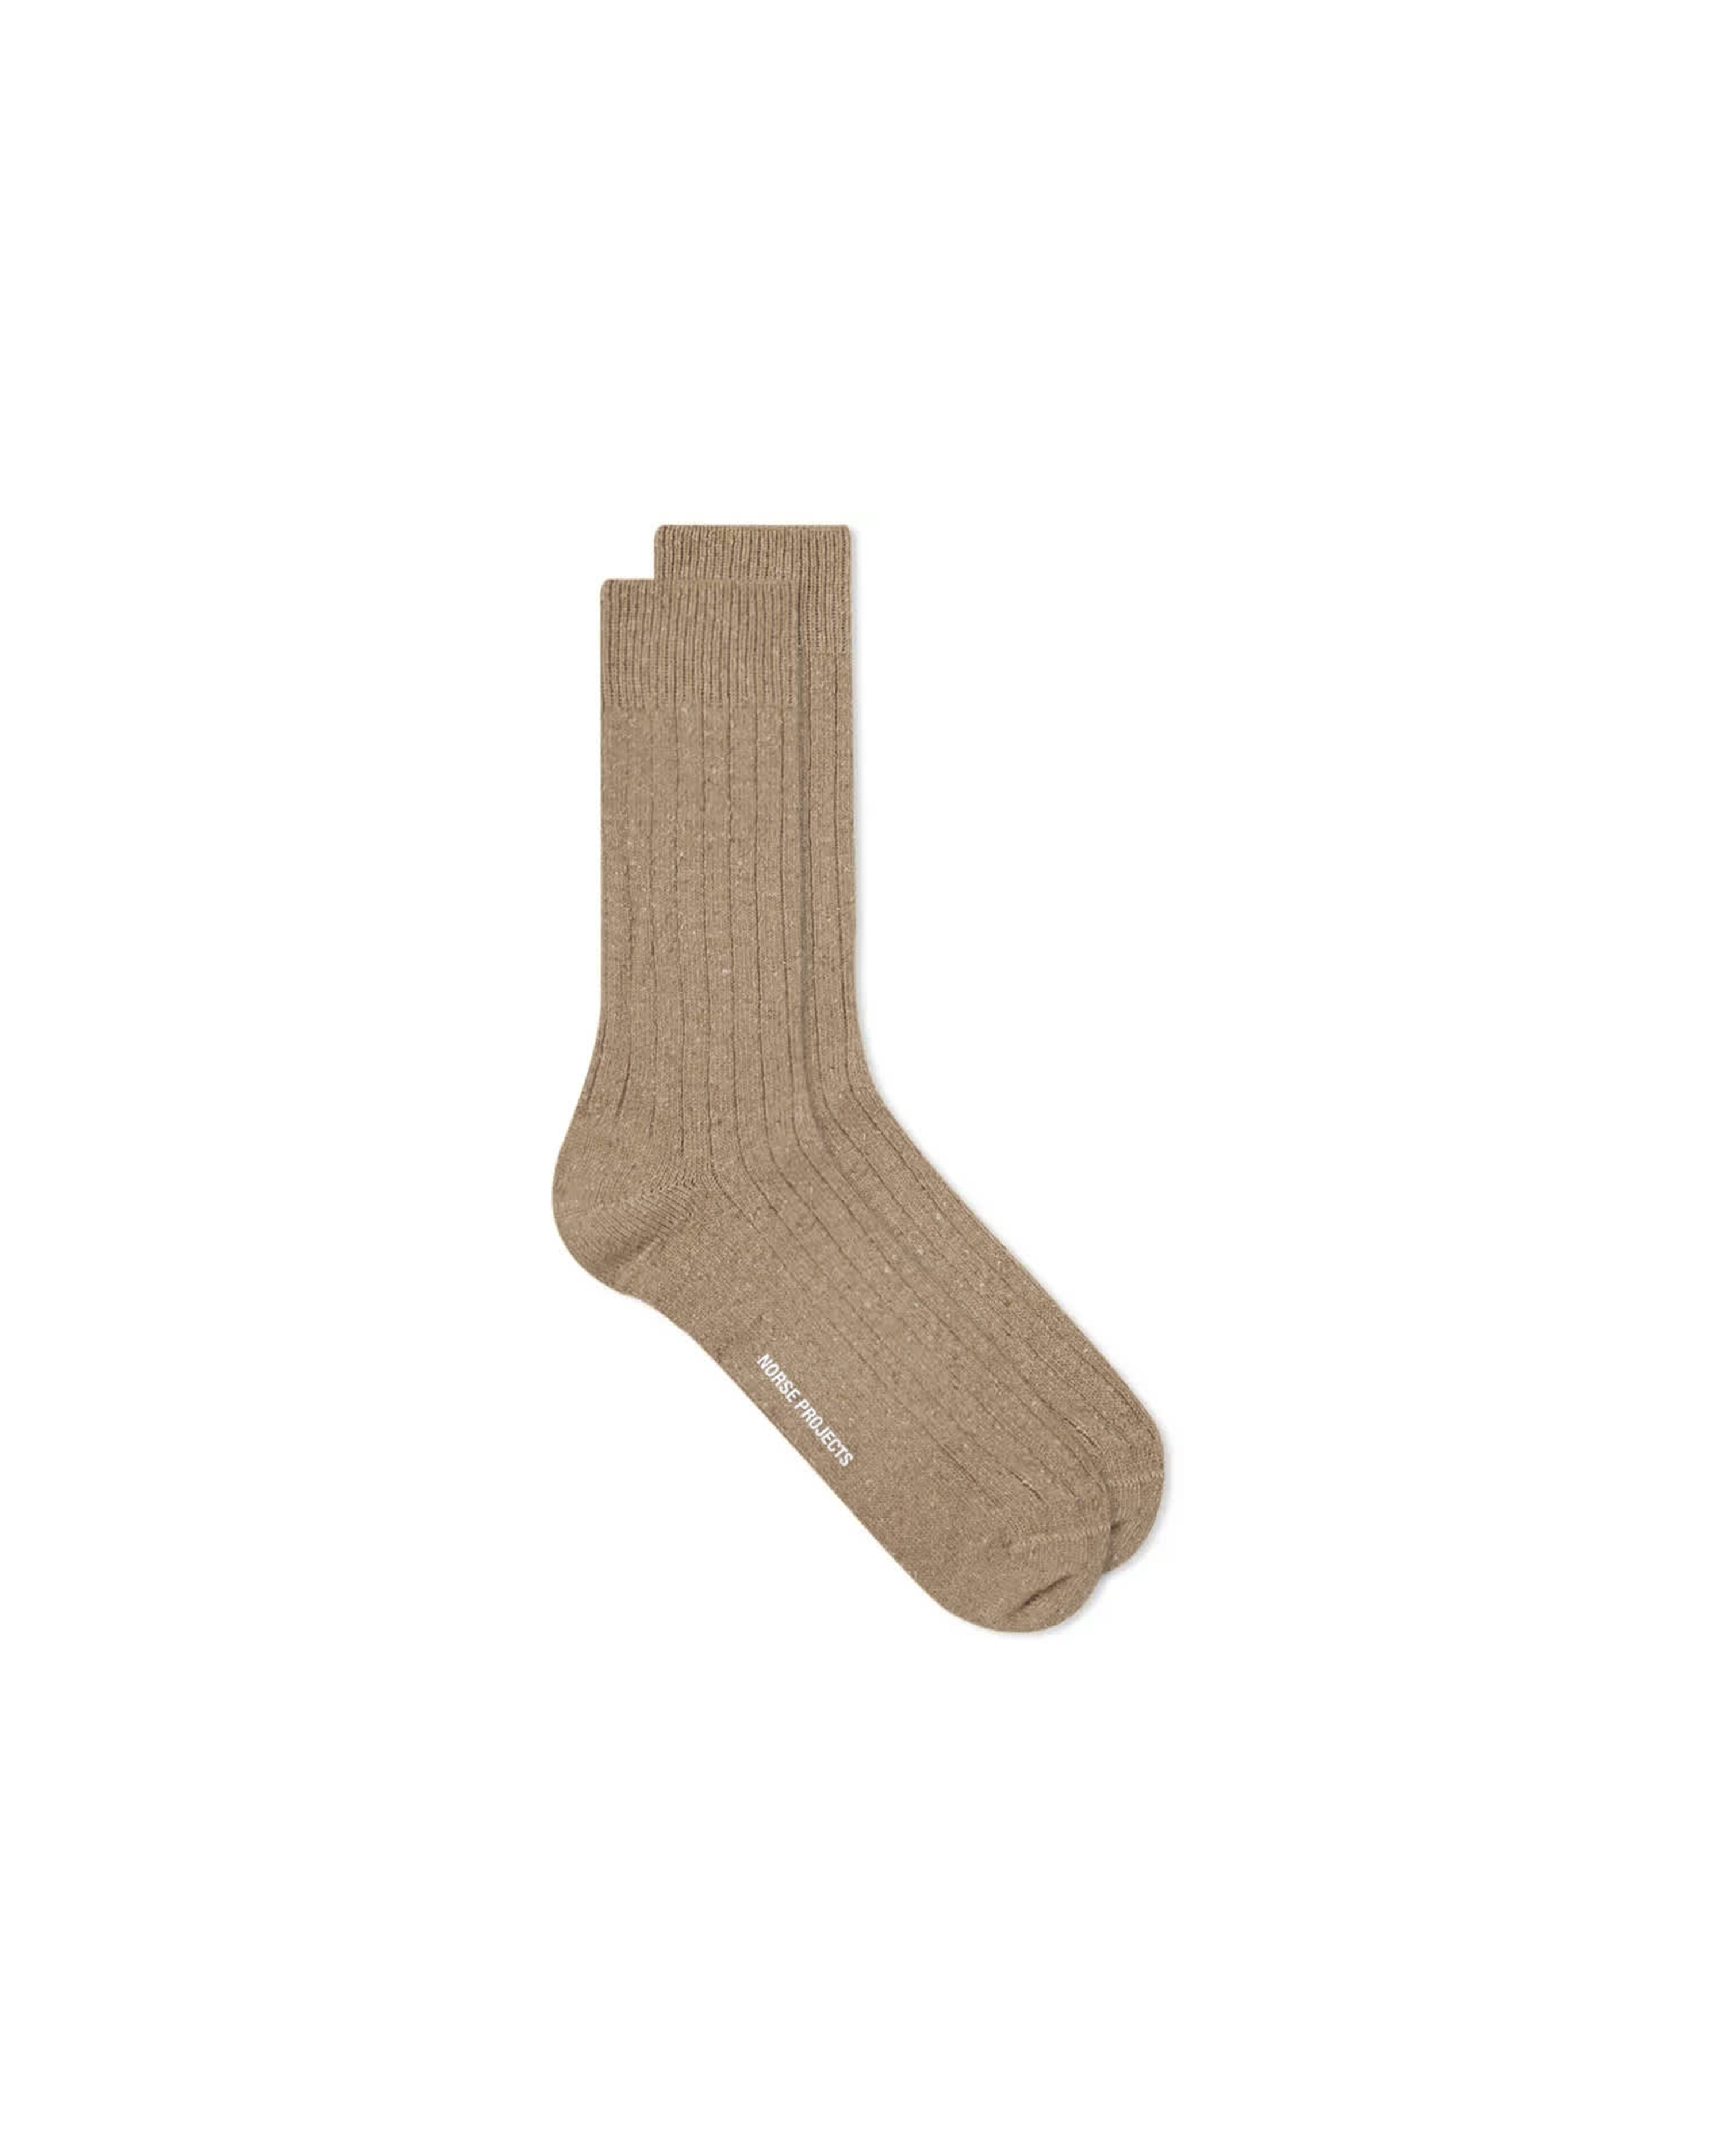 Bjarki Neps Socks - Utility Khaki